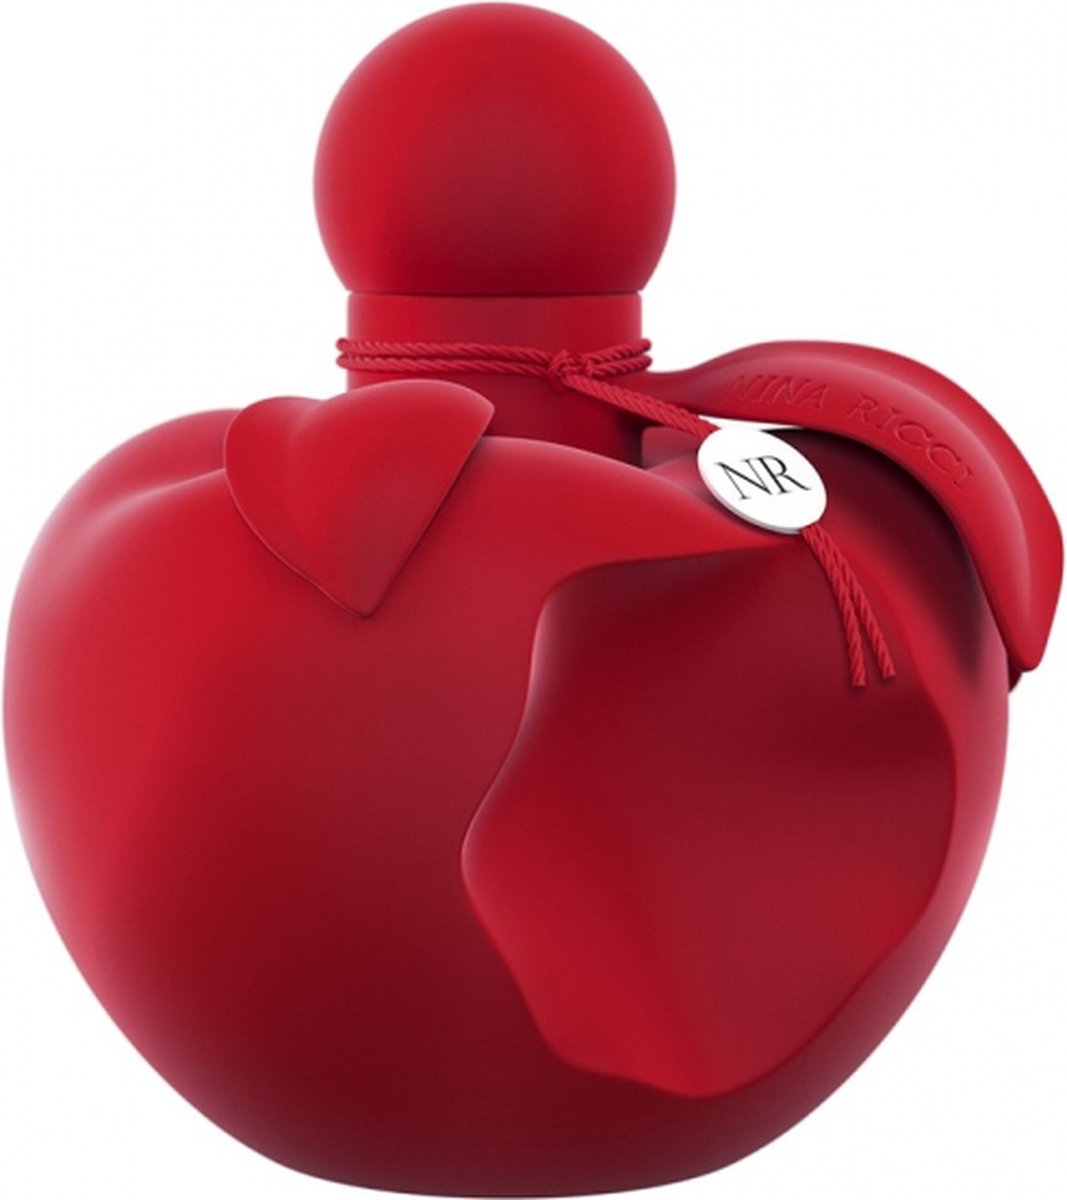 NINA RICCI NINA EXTRA ROUGE eau de parfum vaporisateur 80 ml | bol.com